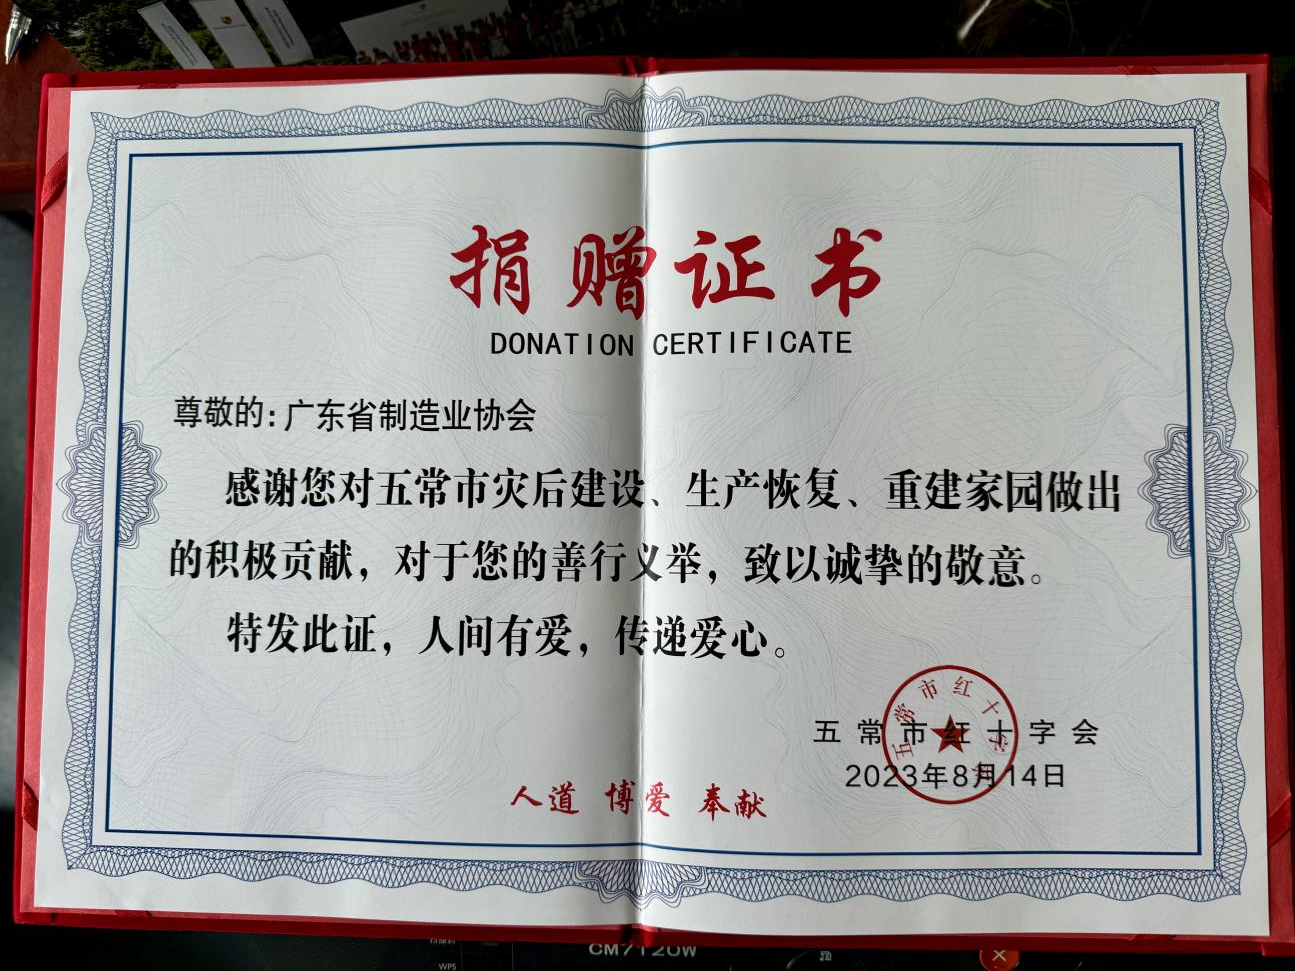 广东省制造业协会捐资五常市支援防汛救灾